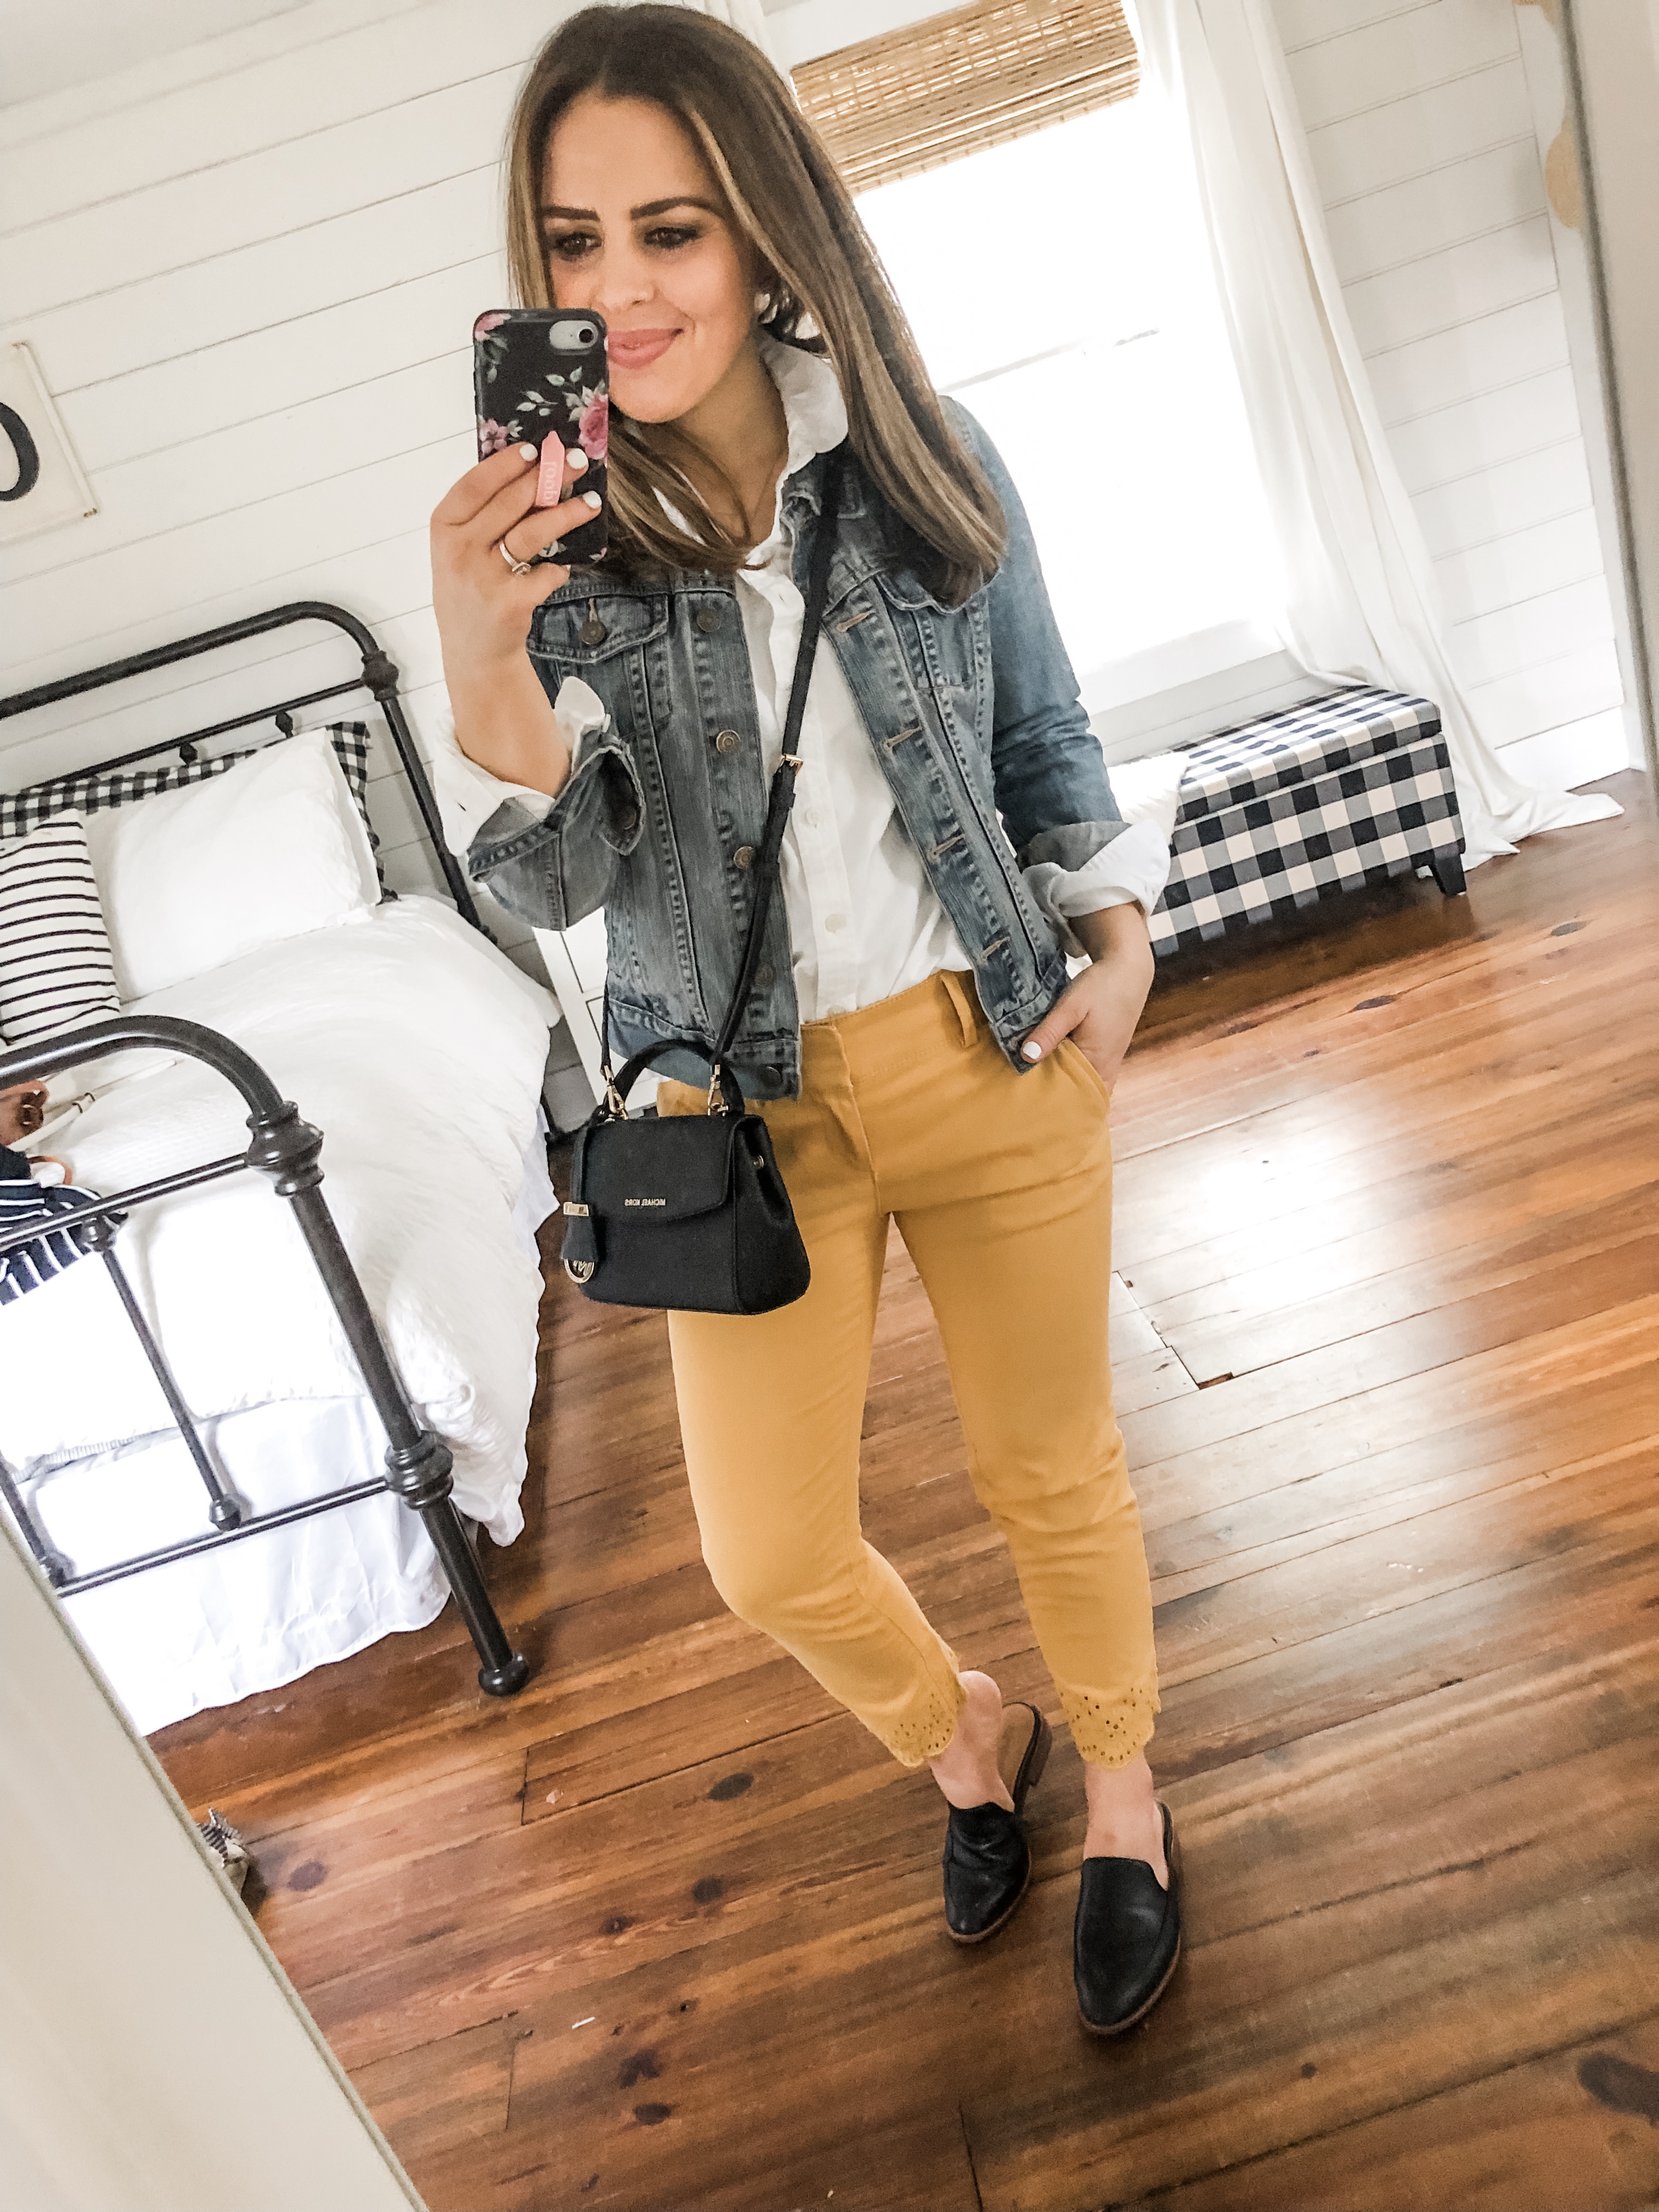 10 ways to style mustard pants. - dress cori lynn